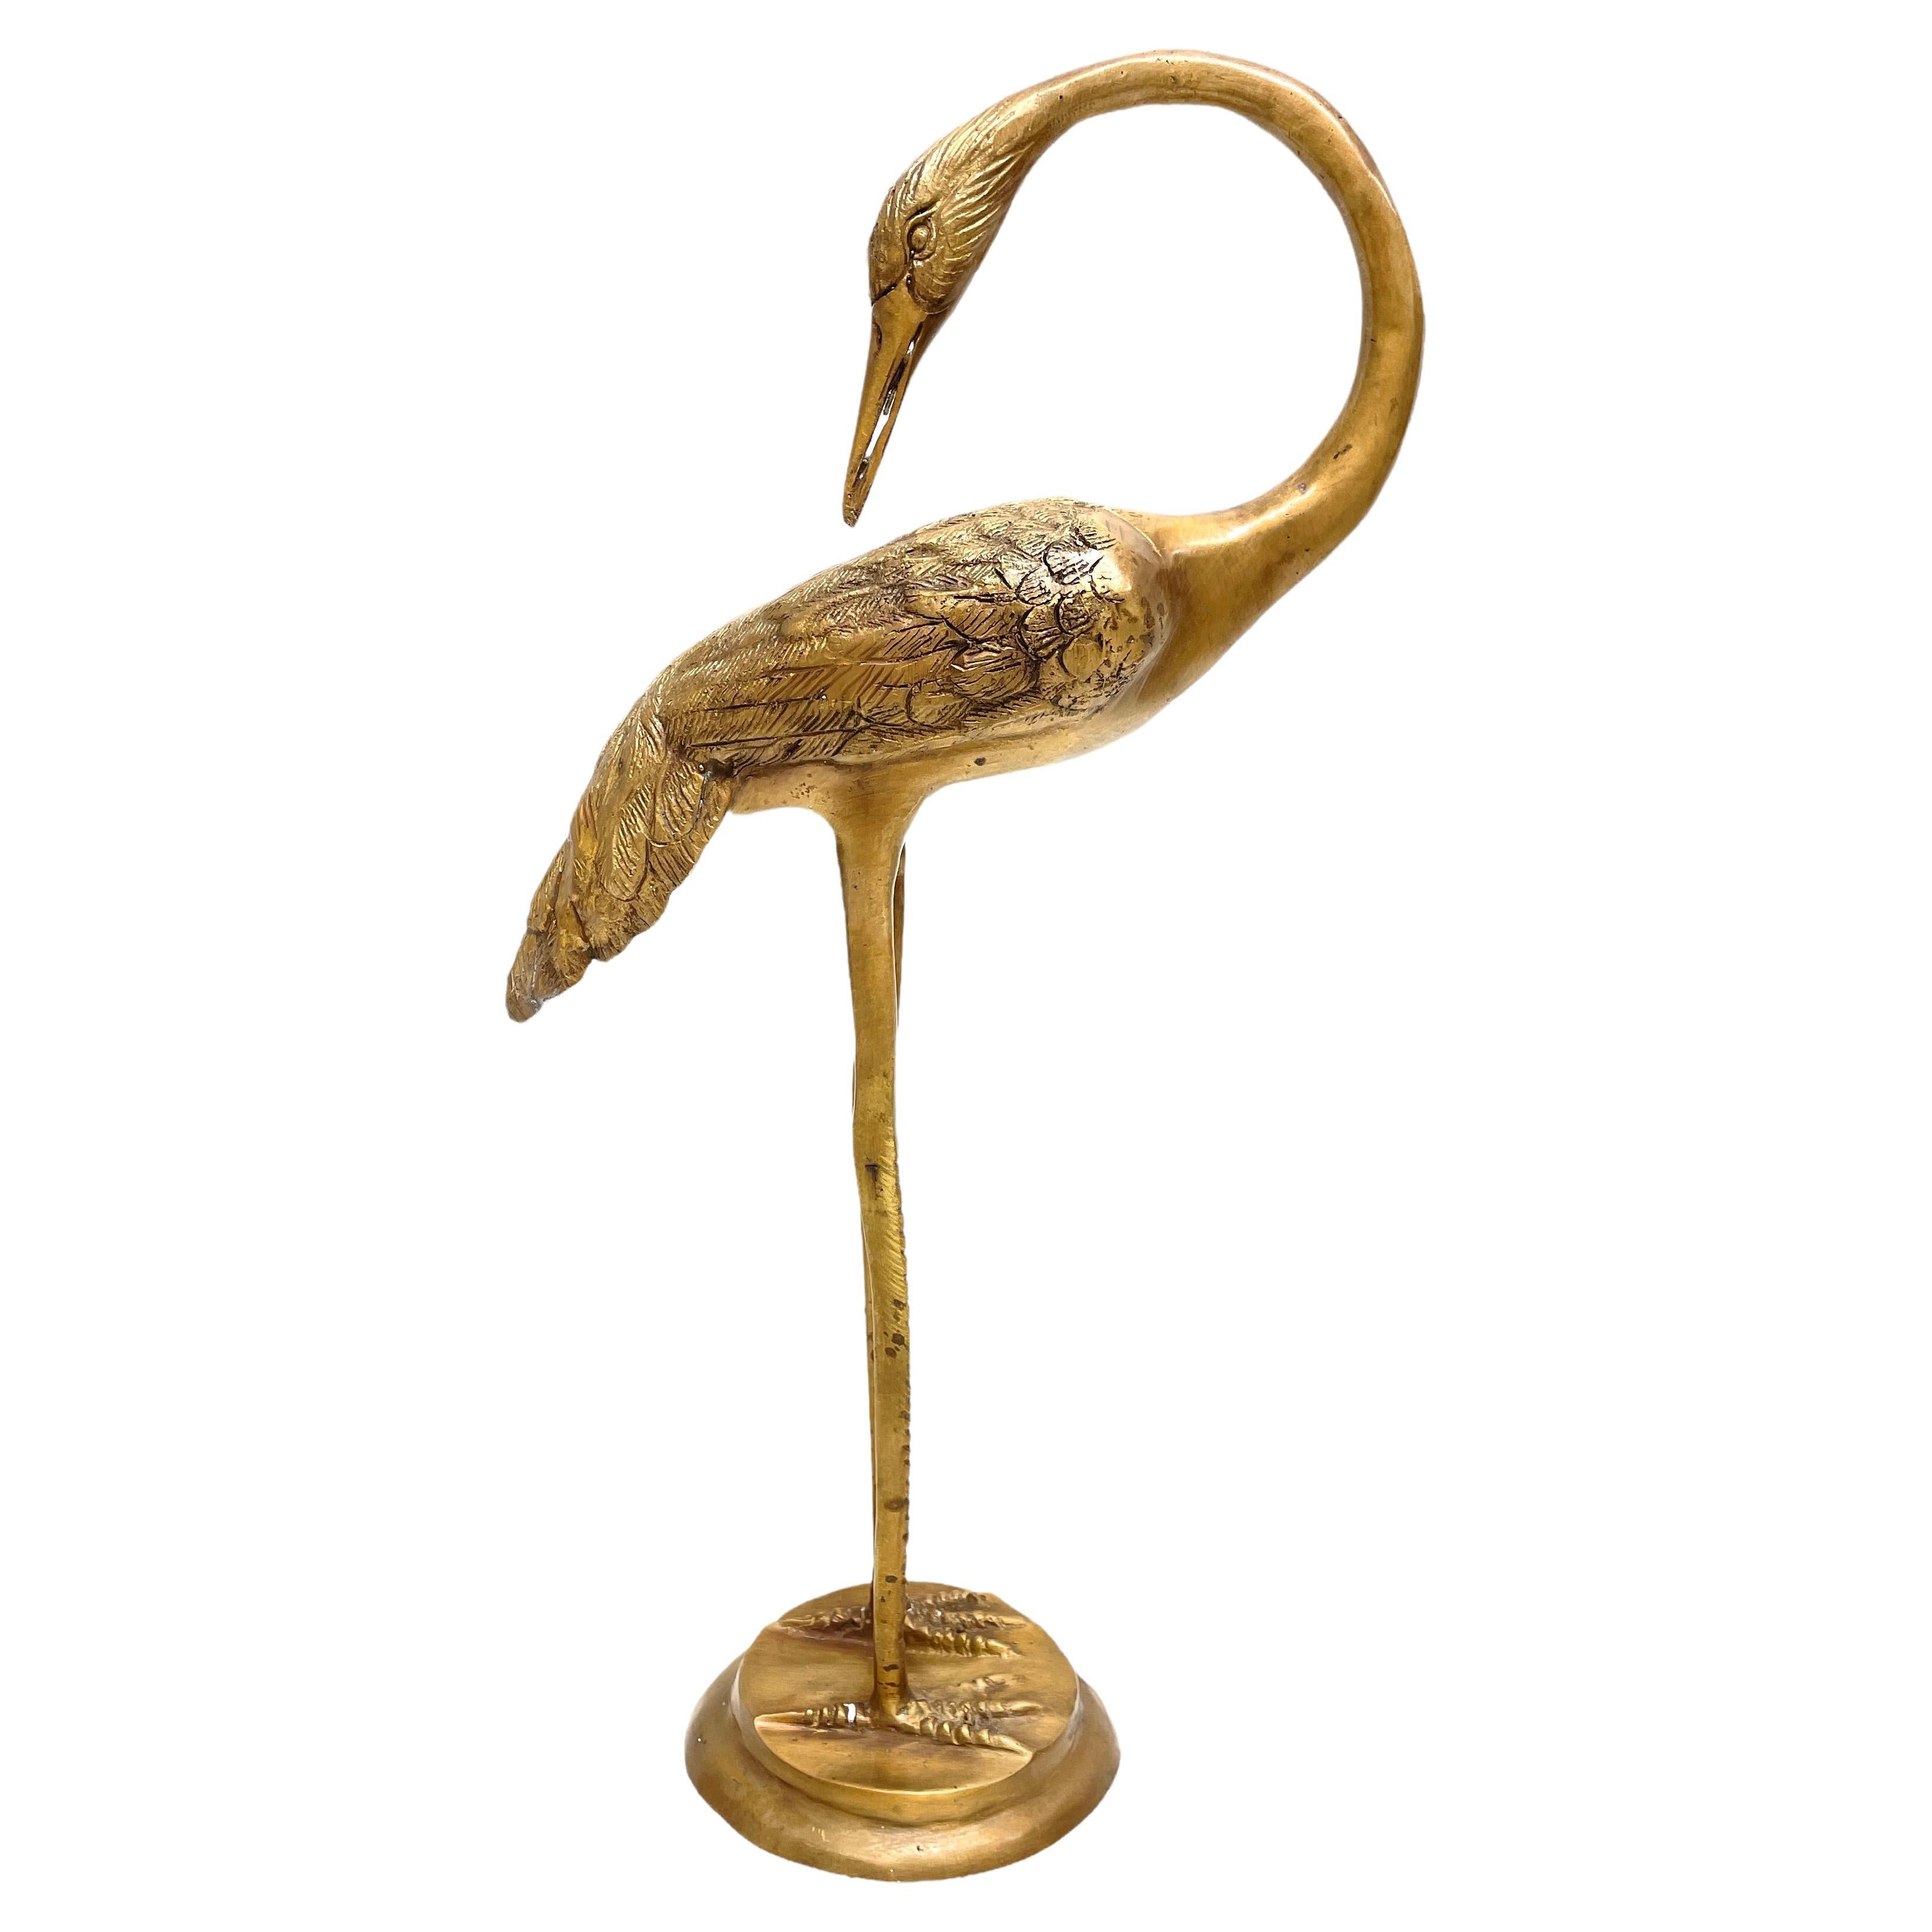 Antique Brass Crane Bird Figurine Original Old Hand Crafted Engraved